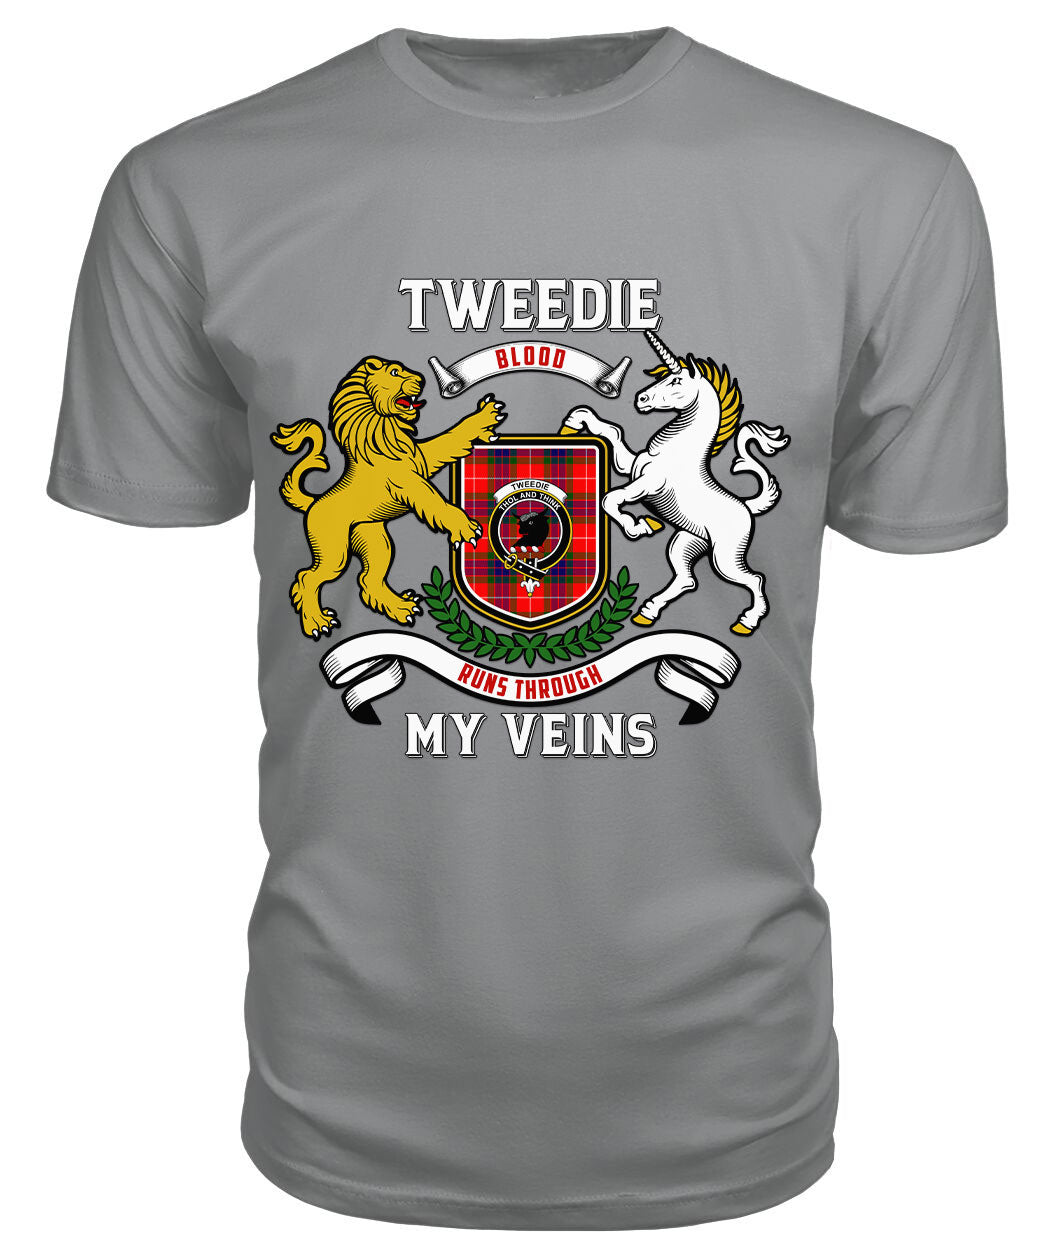 Tweedie Tartan Crest 2D T-shirt - Blood Runs Through My Veins Style